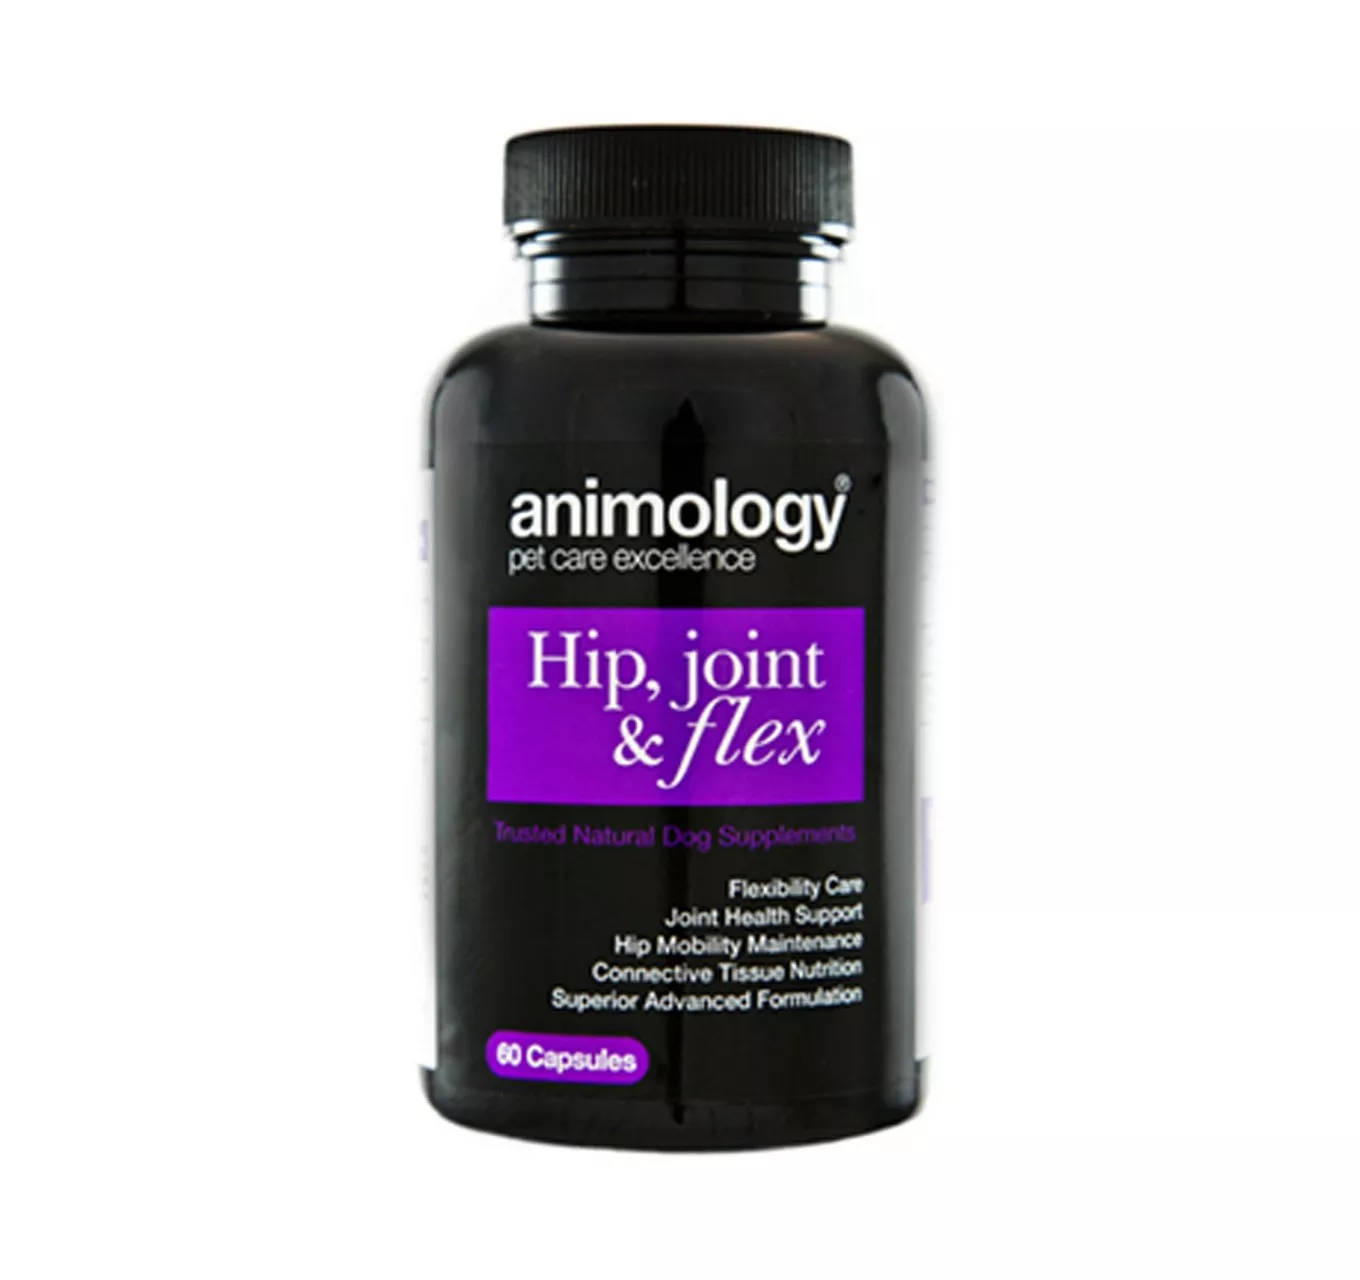 Hip Joint & Flex Supplement